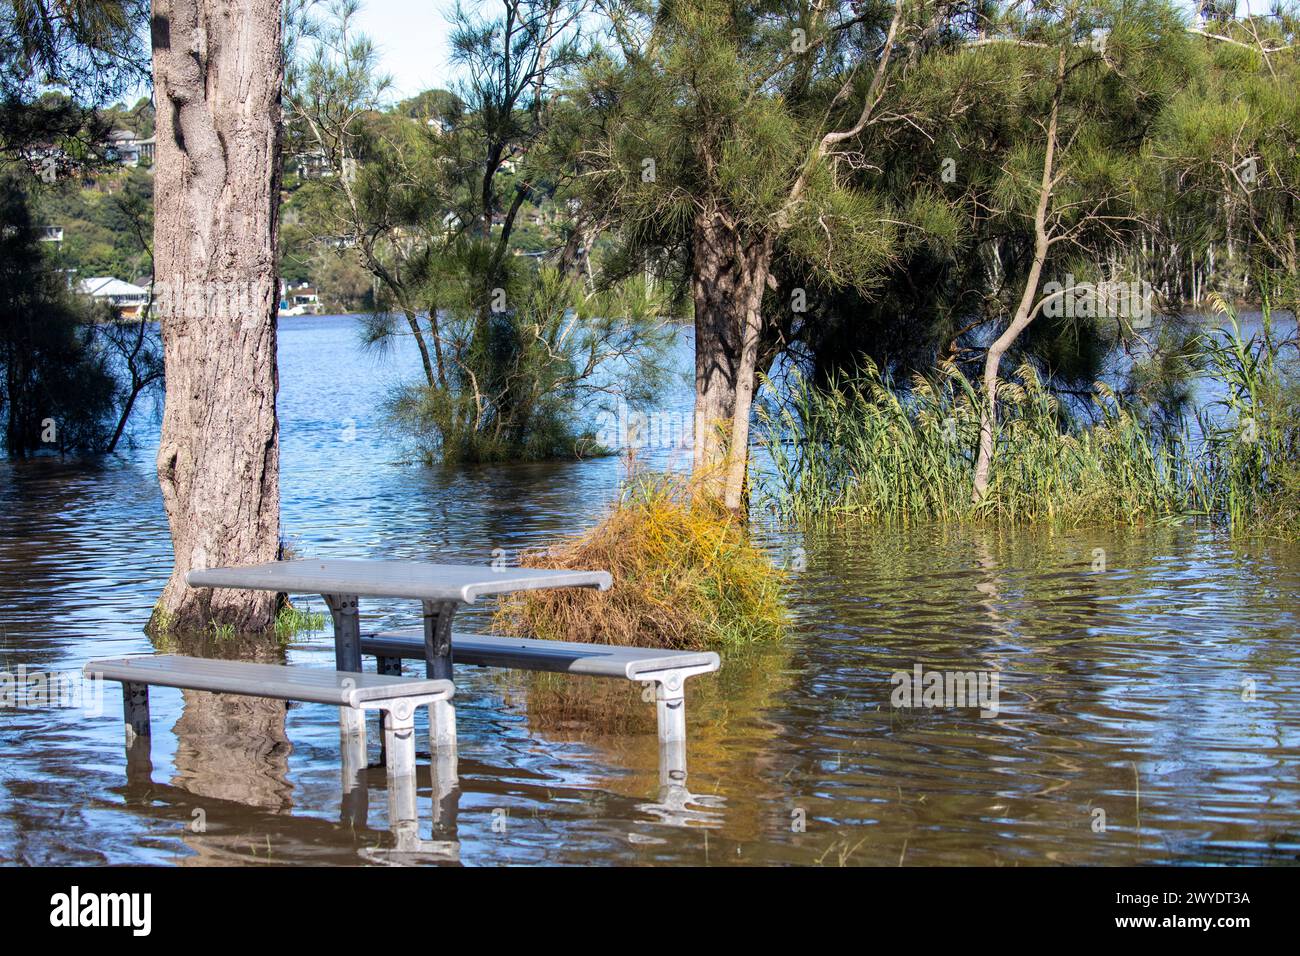 Sabato 6 aprile 2024. Sydney è stata colpita da un diluvio di pioggia nelle ultime 48 ore, con alcune aree, tra cui Penrith, che hanno ricevuto le piogge più pesanti di sempre, a Narrabeen i residenti intorno alla laguna di Narabeen, nella foto, sono stati invitati ad evacuare a causa dell'innalzamento del livello dell'acqua dal lago Narrabeen sulle spiagge settentrionali di Sydney. dove sono caduti oltre 150 mm di pioggia. Ci sono stati oltre 50 avvistamenti di inondazioni lungo i fiumi nel nuovo Galles del Sud e si prevede che la diga di Warragamba fuoriesca. Accreditate le notizie dal vivo di Martin Berry @alamy. Foto Stock